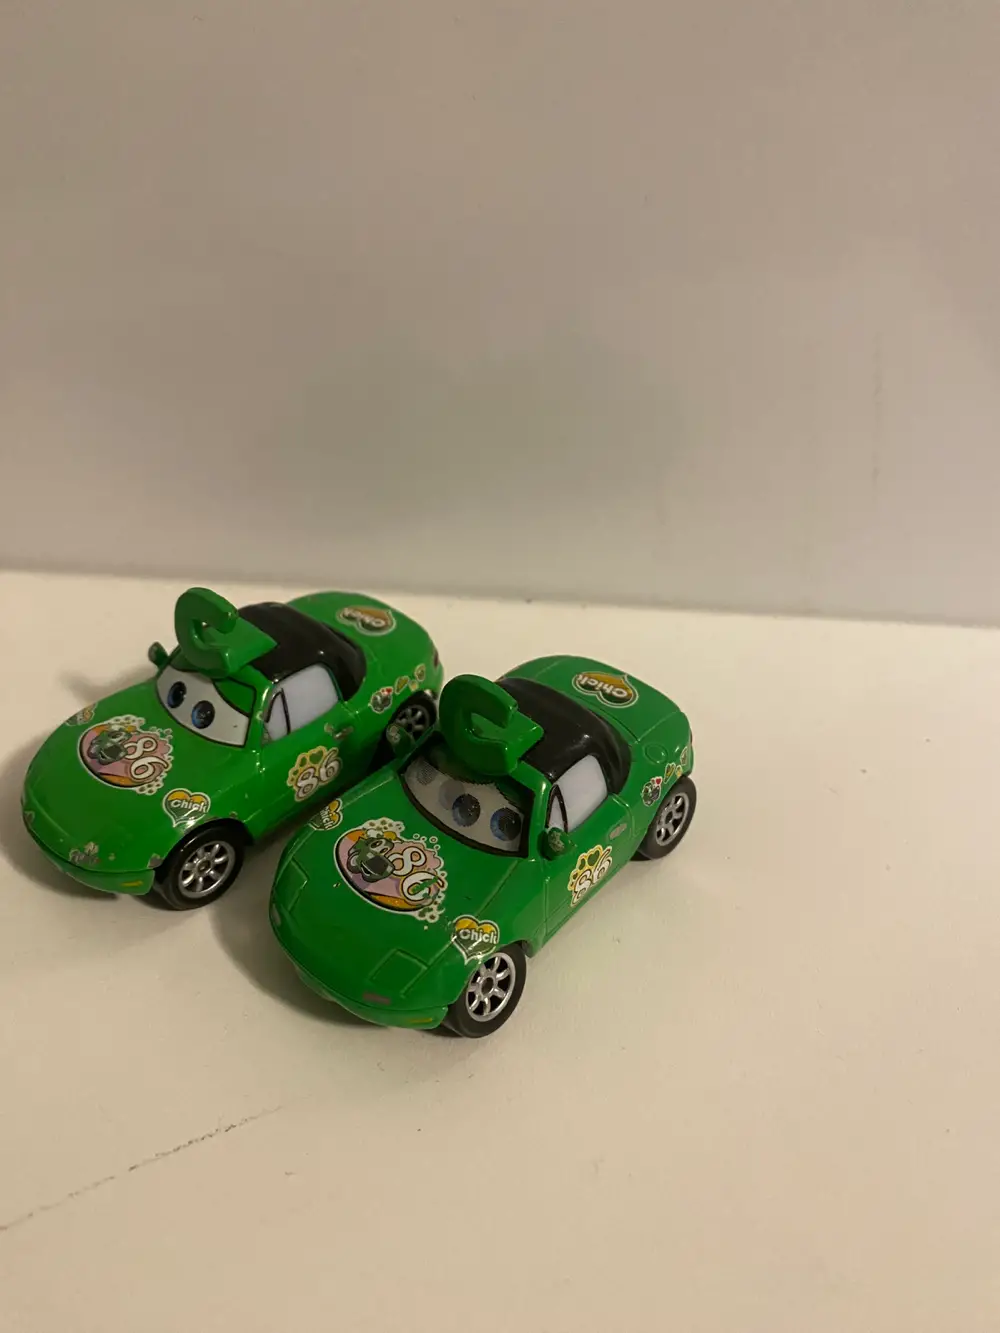 Cars Tvillinger